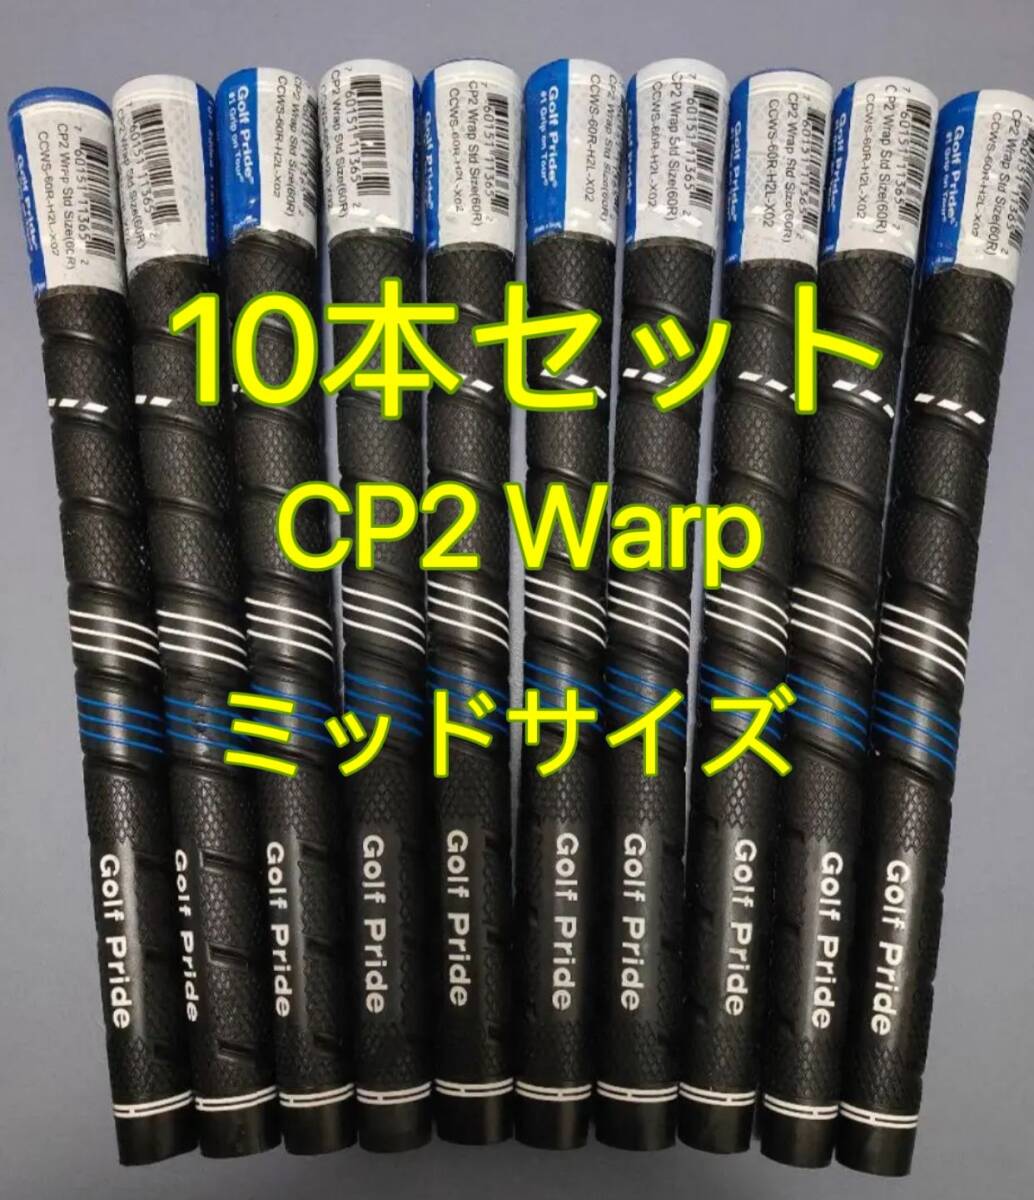 【新品】ゴルフプライド グリップ CP2 Warp ミッドサイズ グリップ 10本セット_画像1